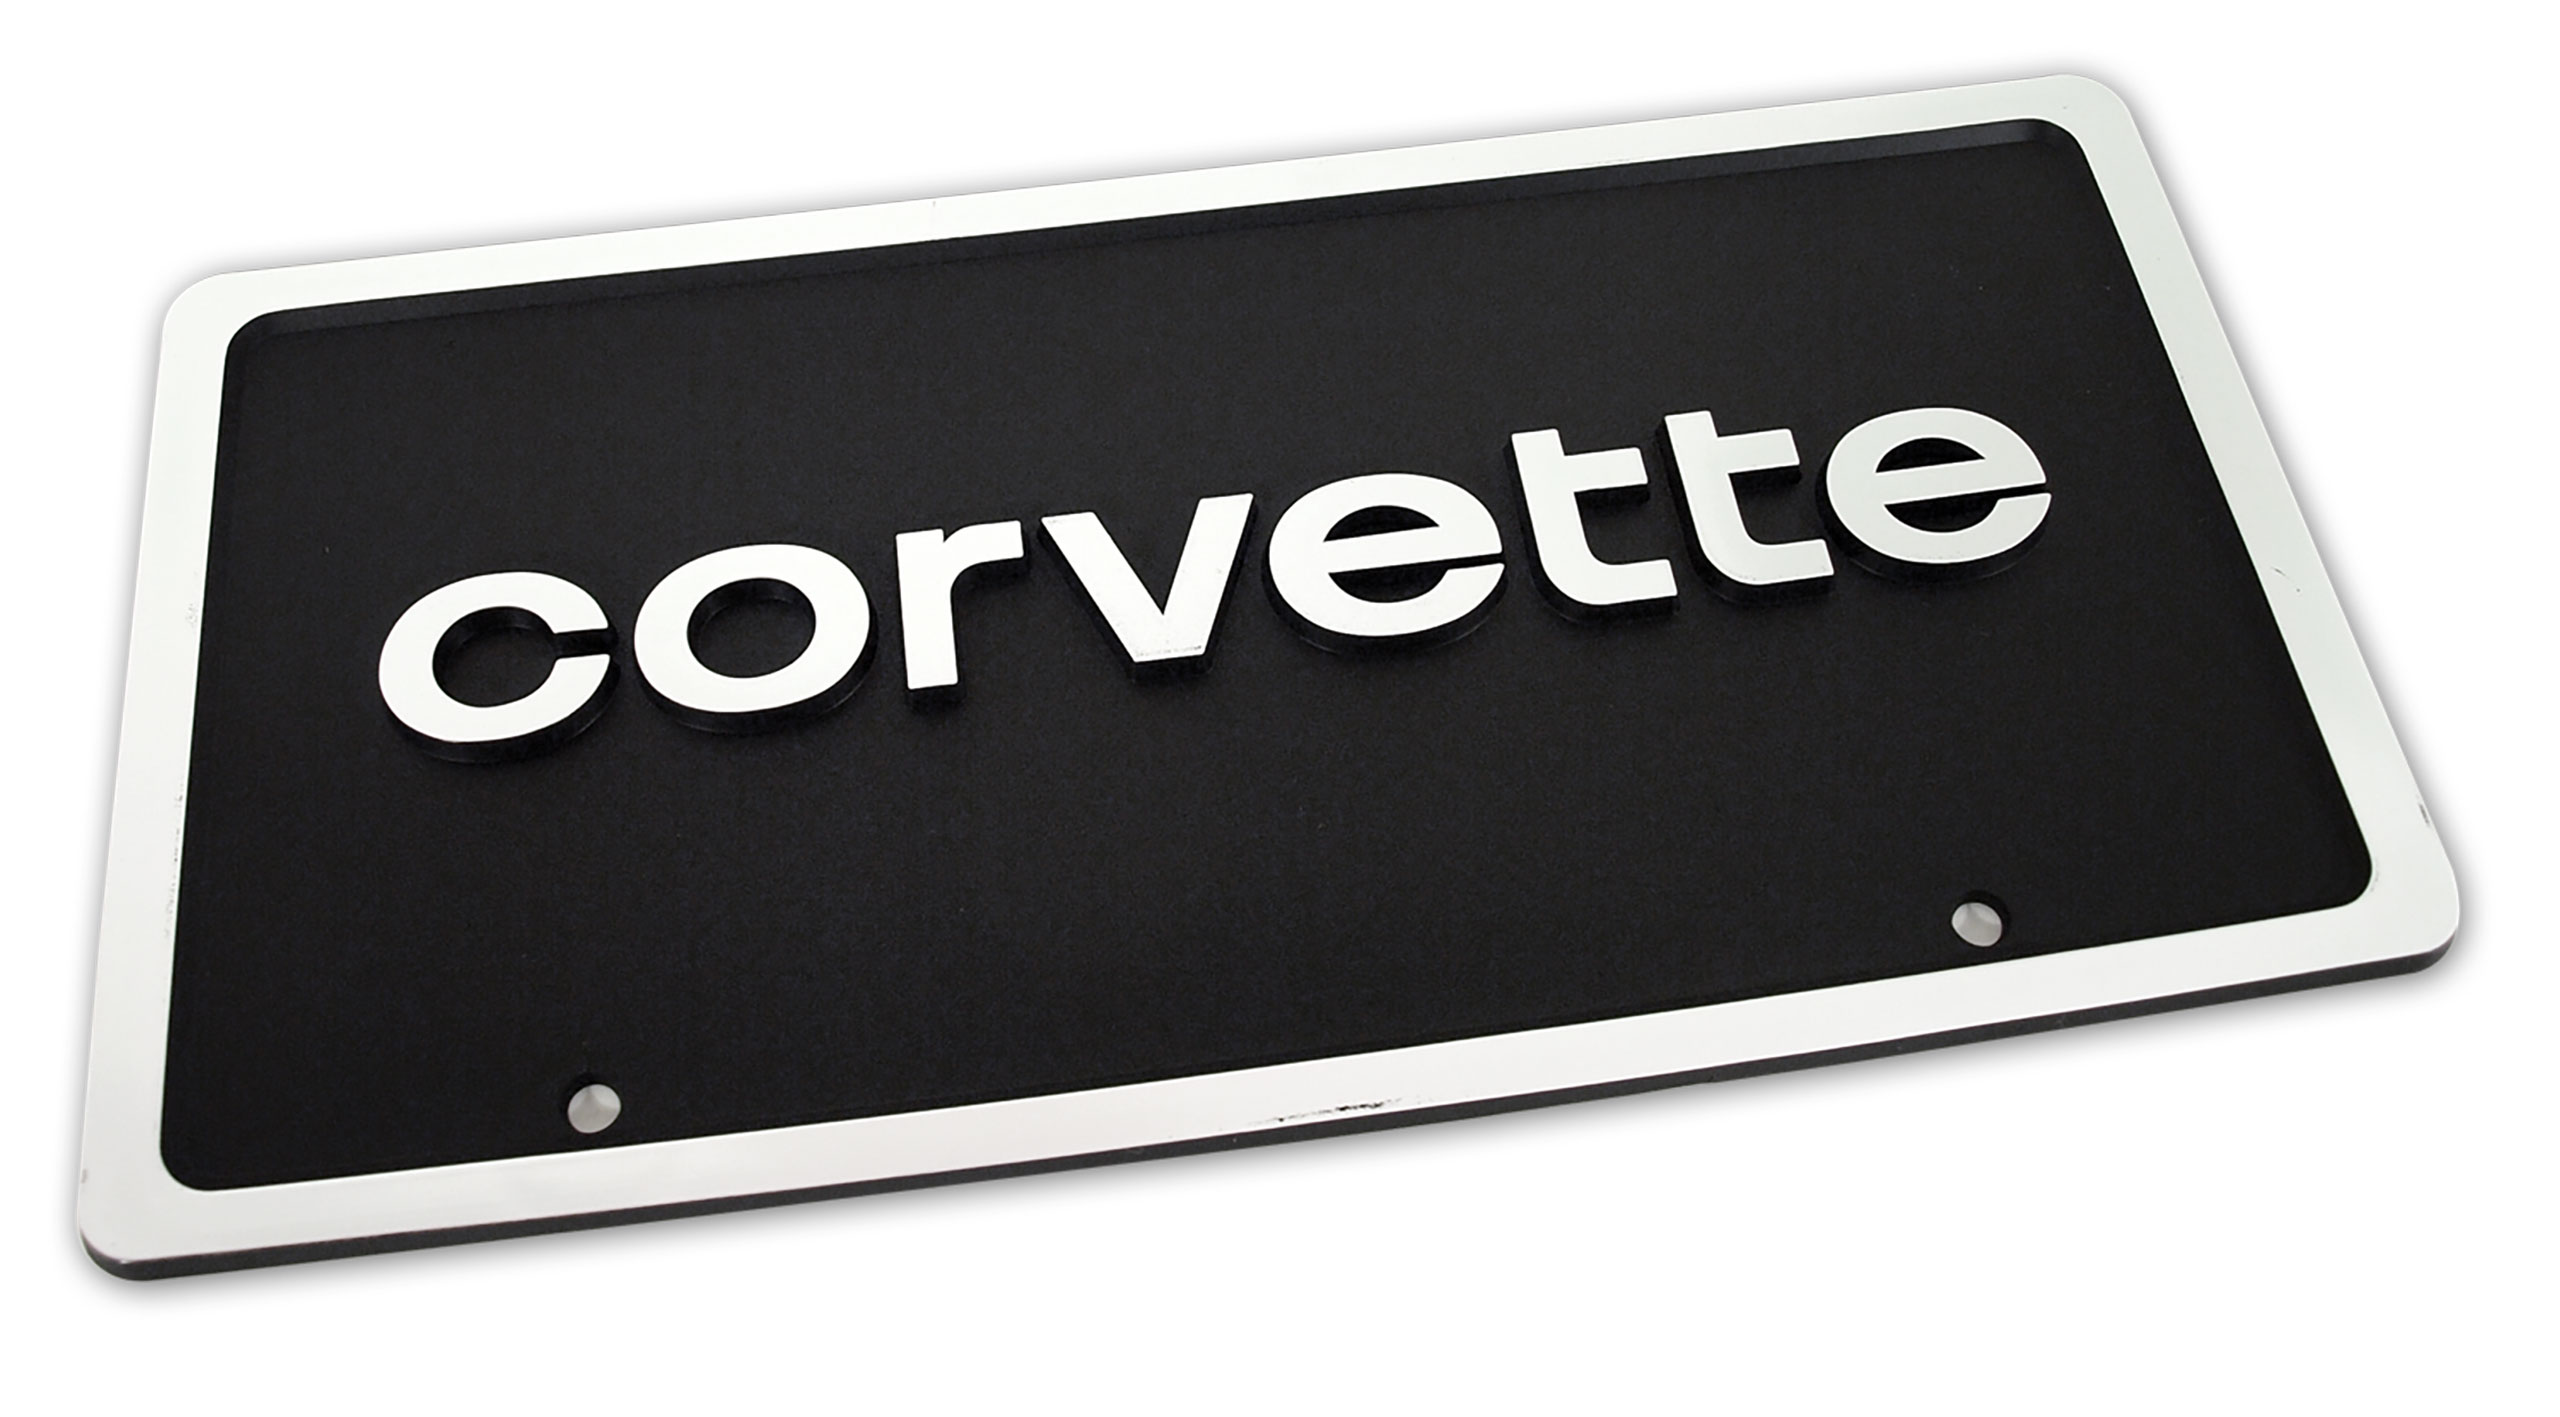 C3 1980-1982 Chevrolet Corvette License Plate. Corvette - Black W/Silver Letters & Border - Auto Accessories of America